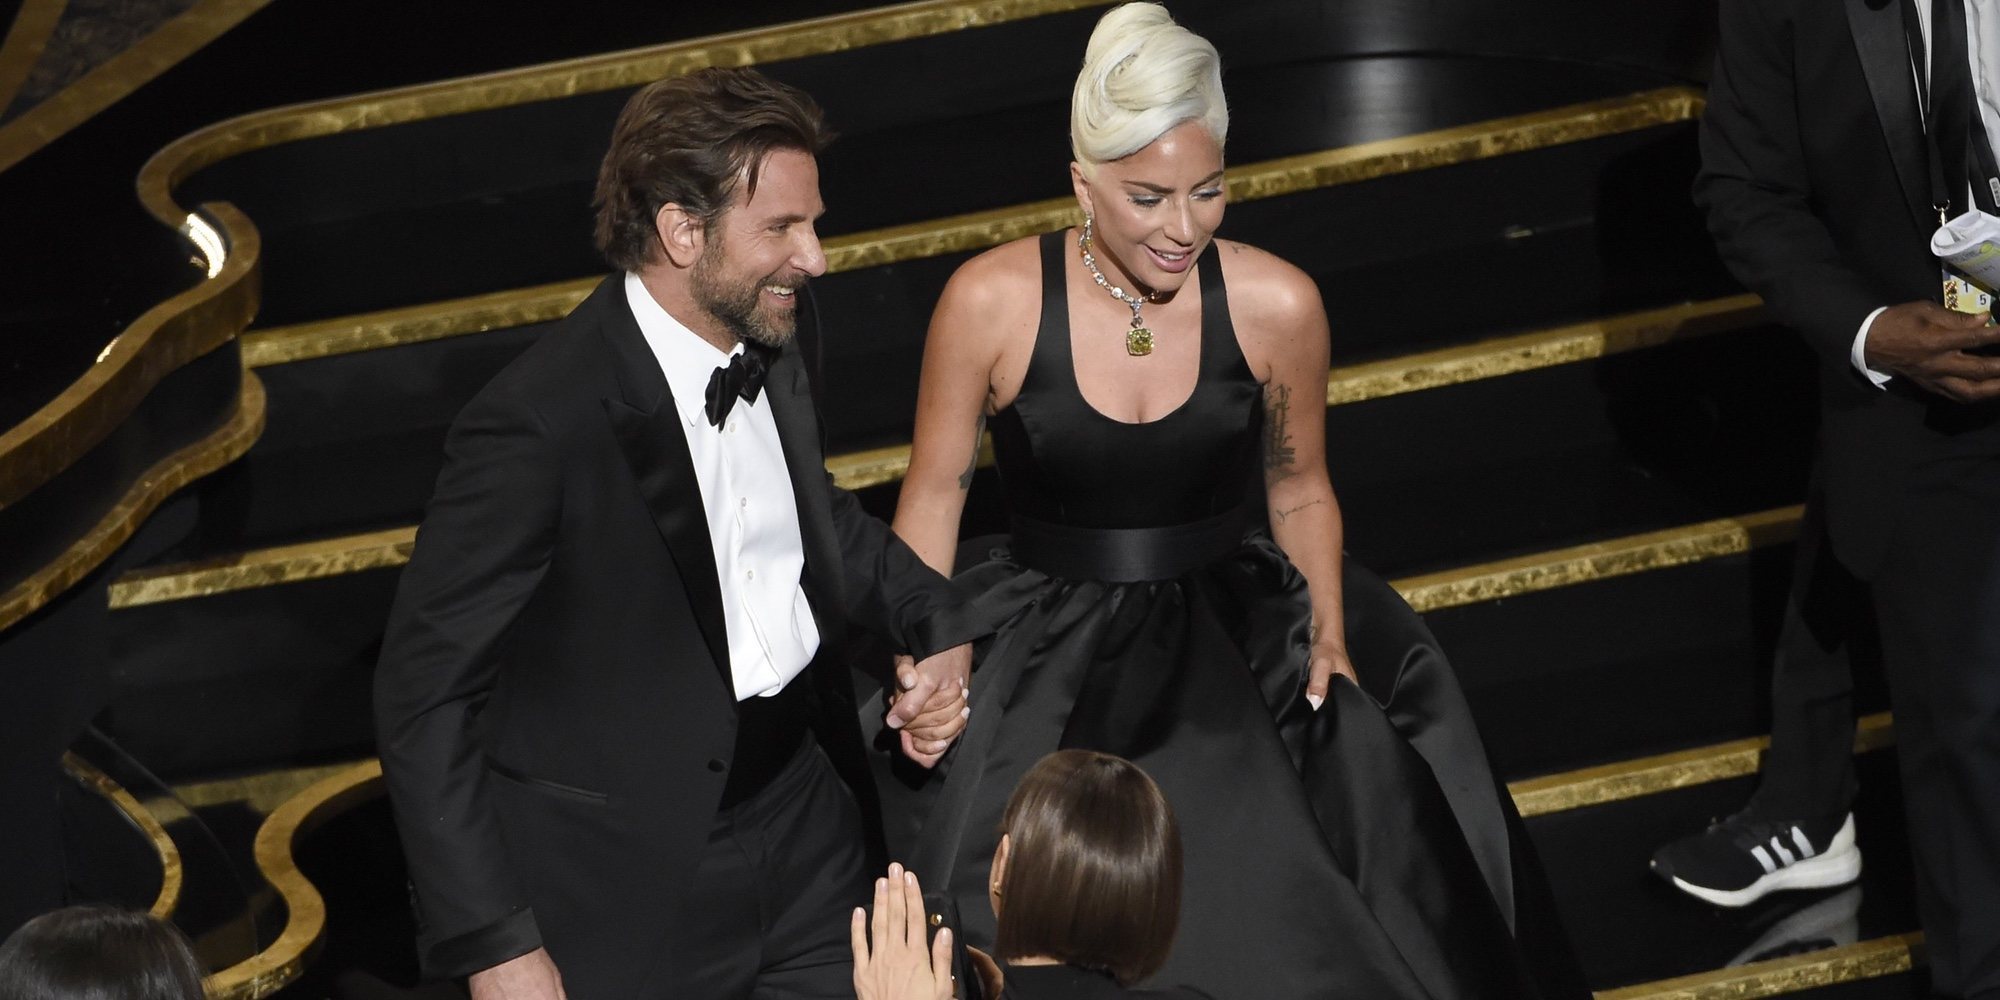 Lady Gaga confiesa su montaje con Bradley Cooper: "La prensa es bastante tonta"